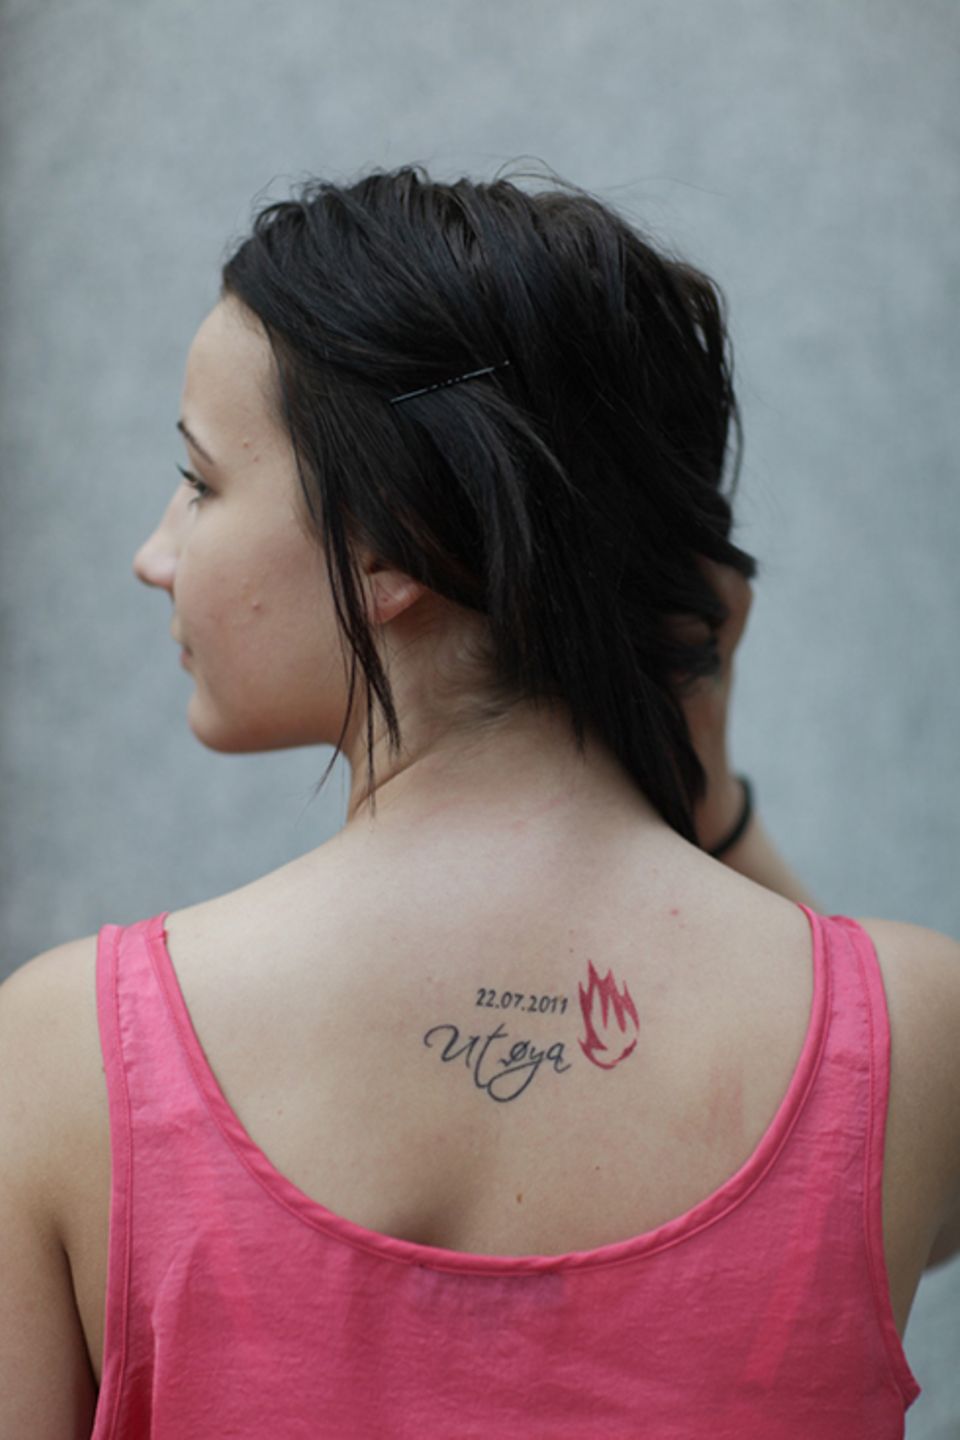 Anschläge in Norwegen: Unter der Haut: Die Tattoos der Überlebenden von Utøya und ihre Geschichten